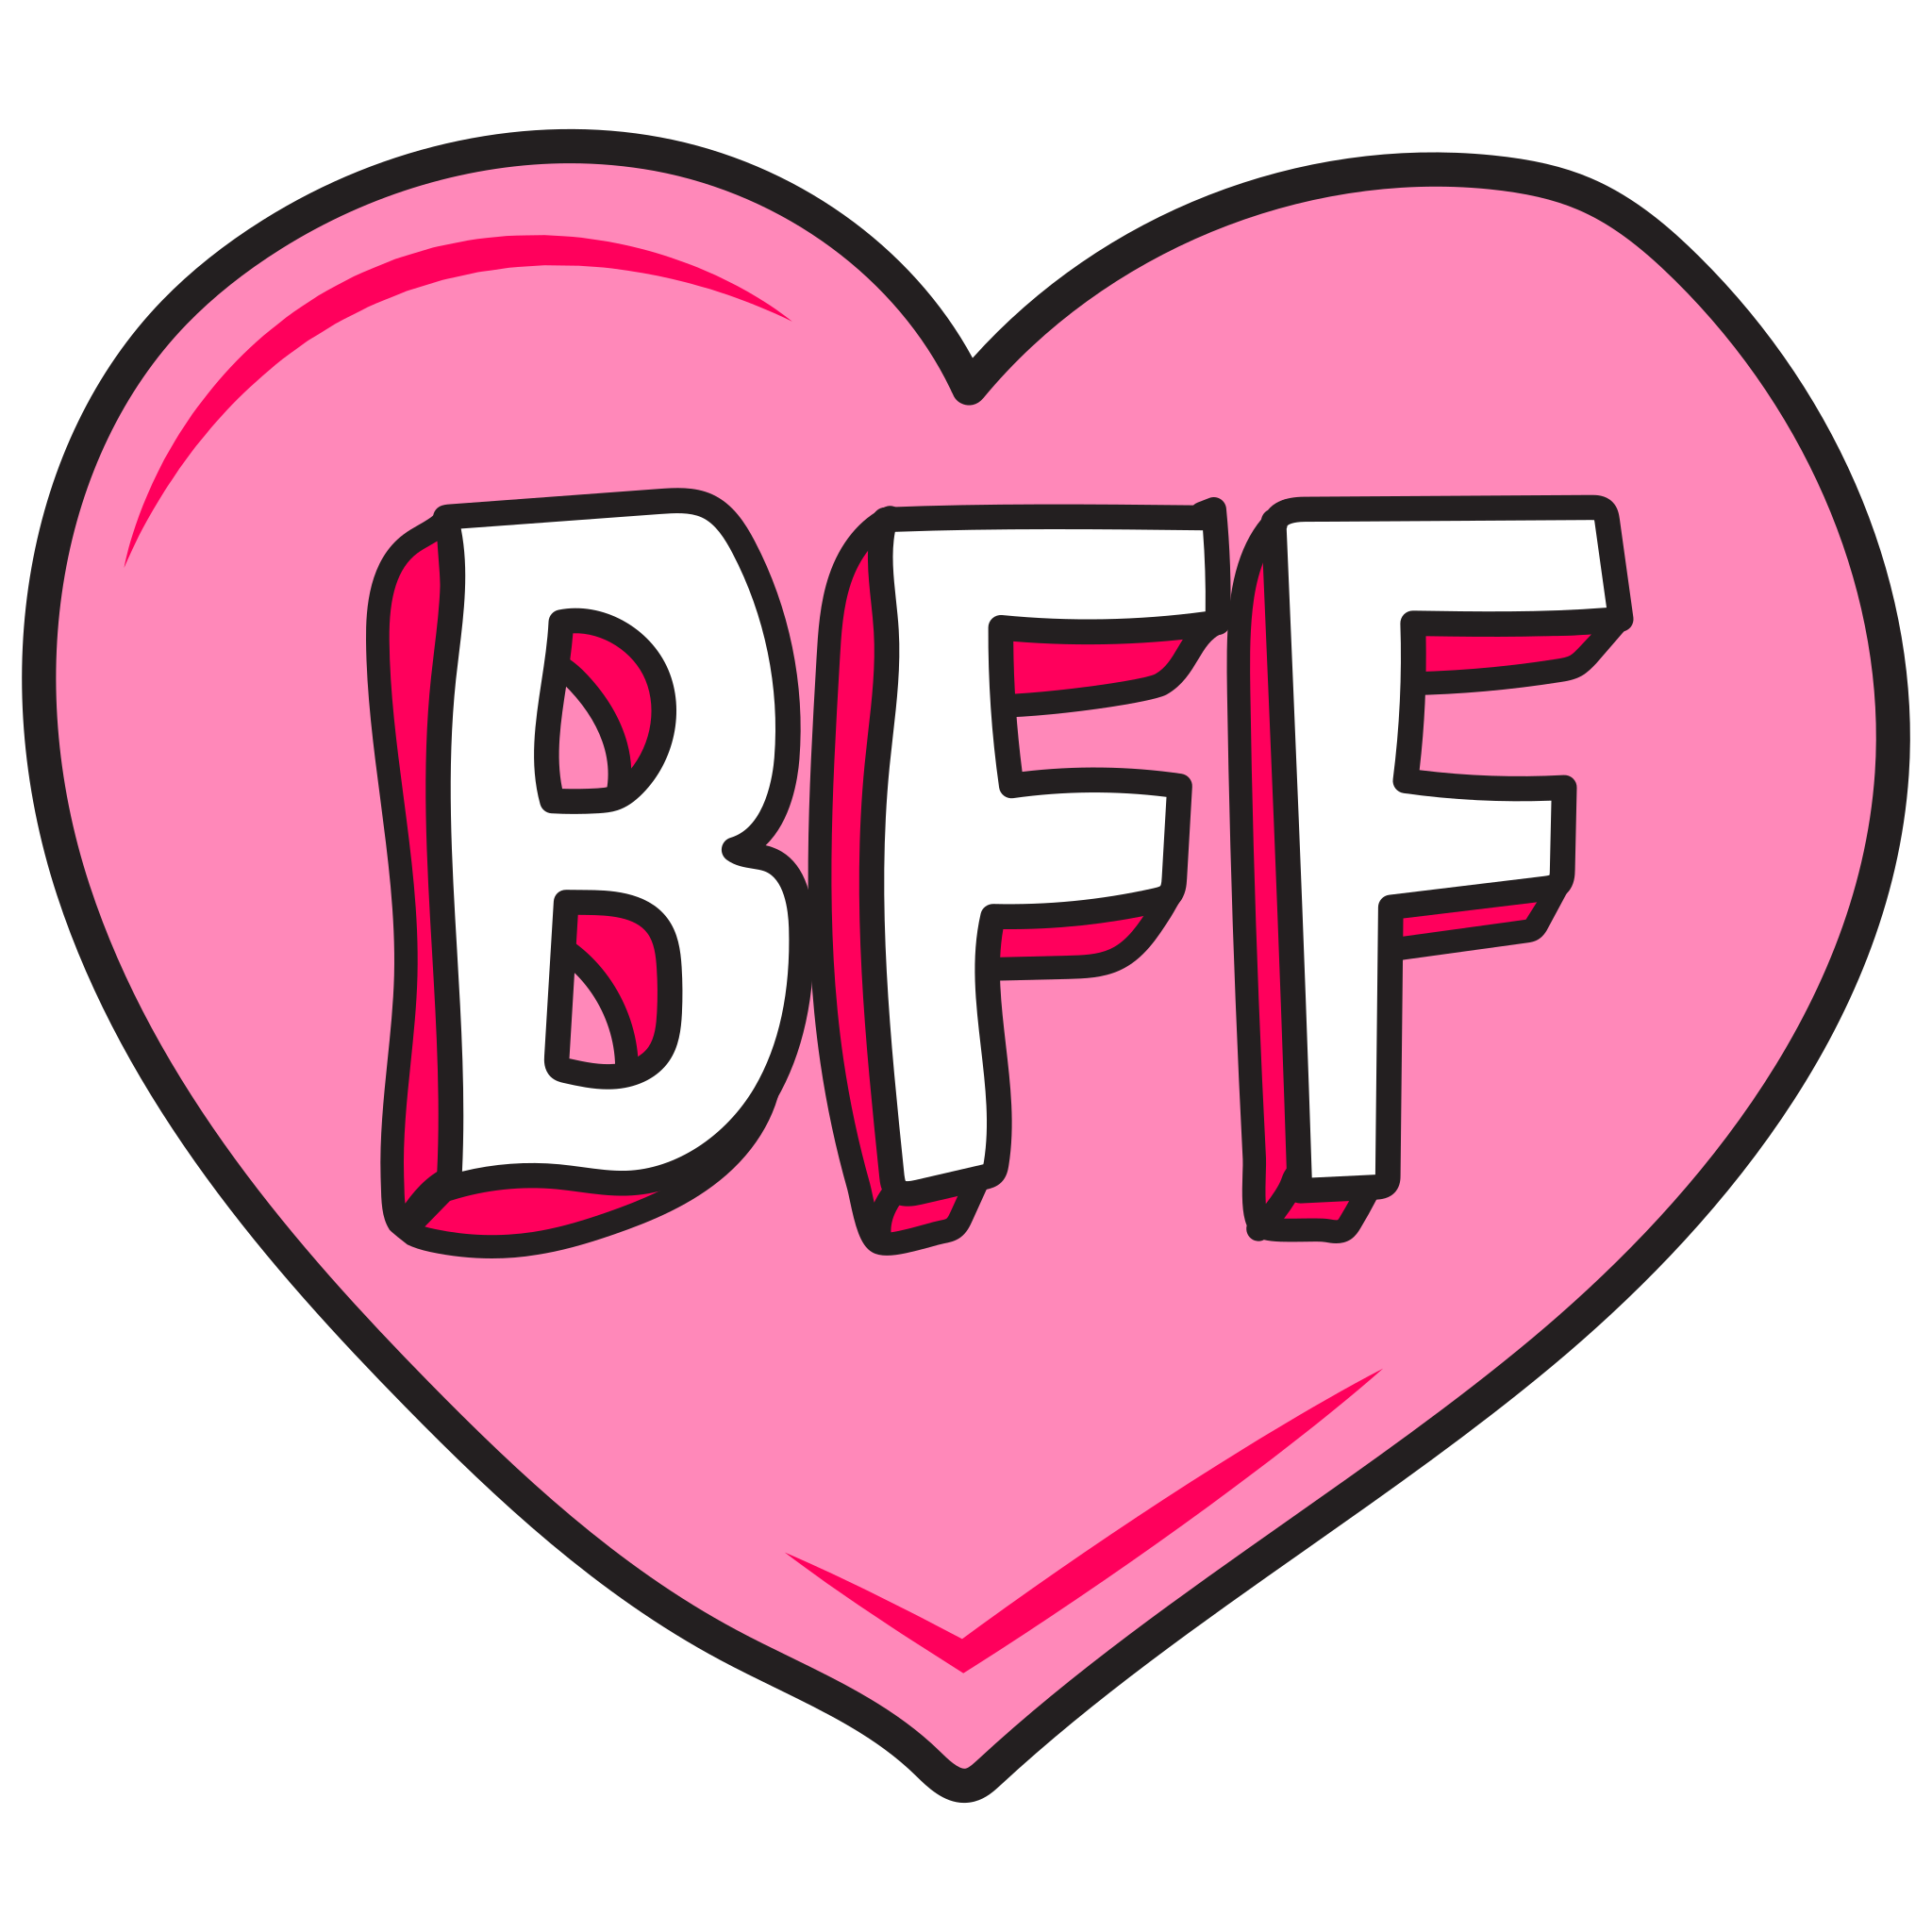 Бфф. BFFS логотип. Что означает БФФ. Что такое БФФ по молодежному в лайке.